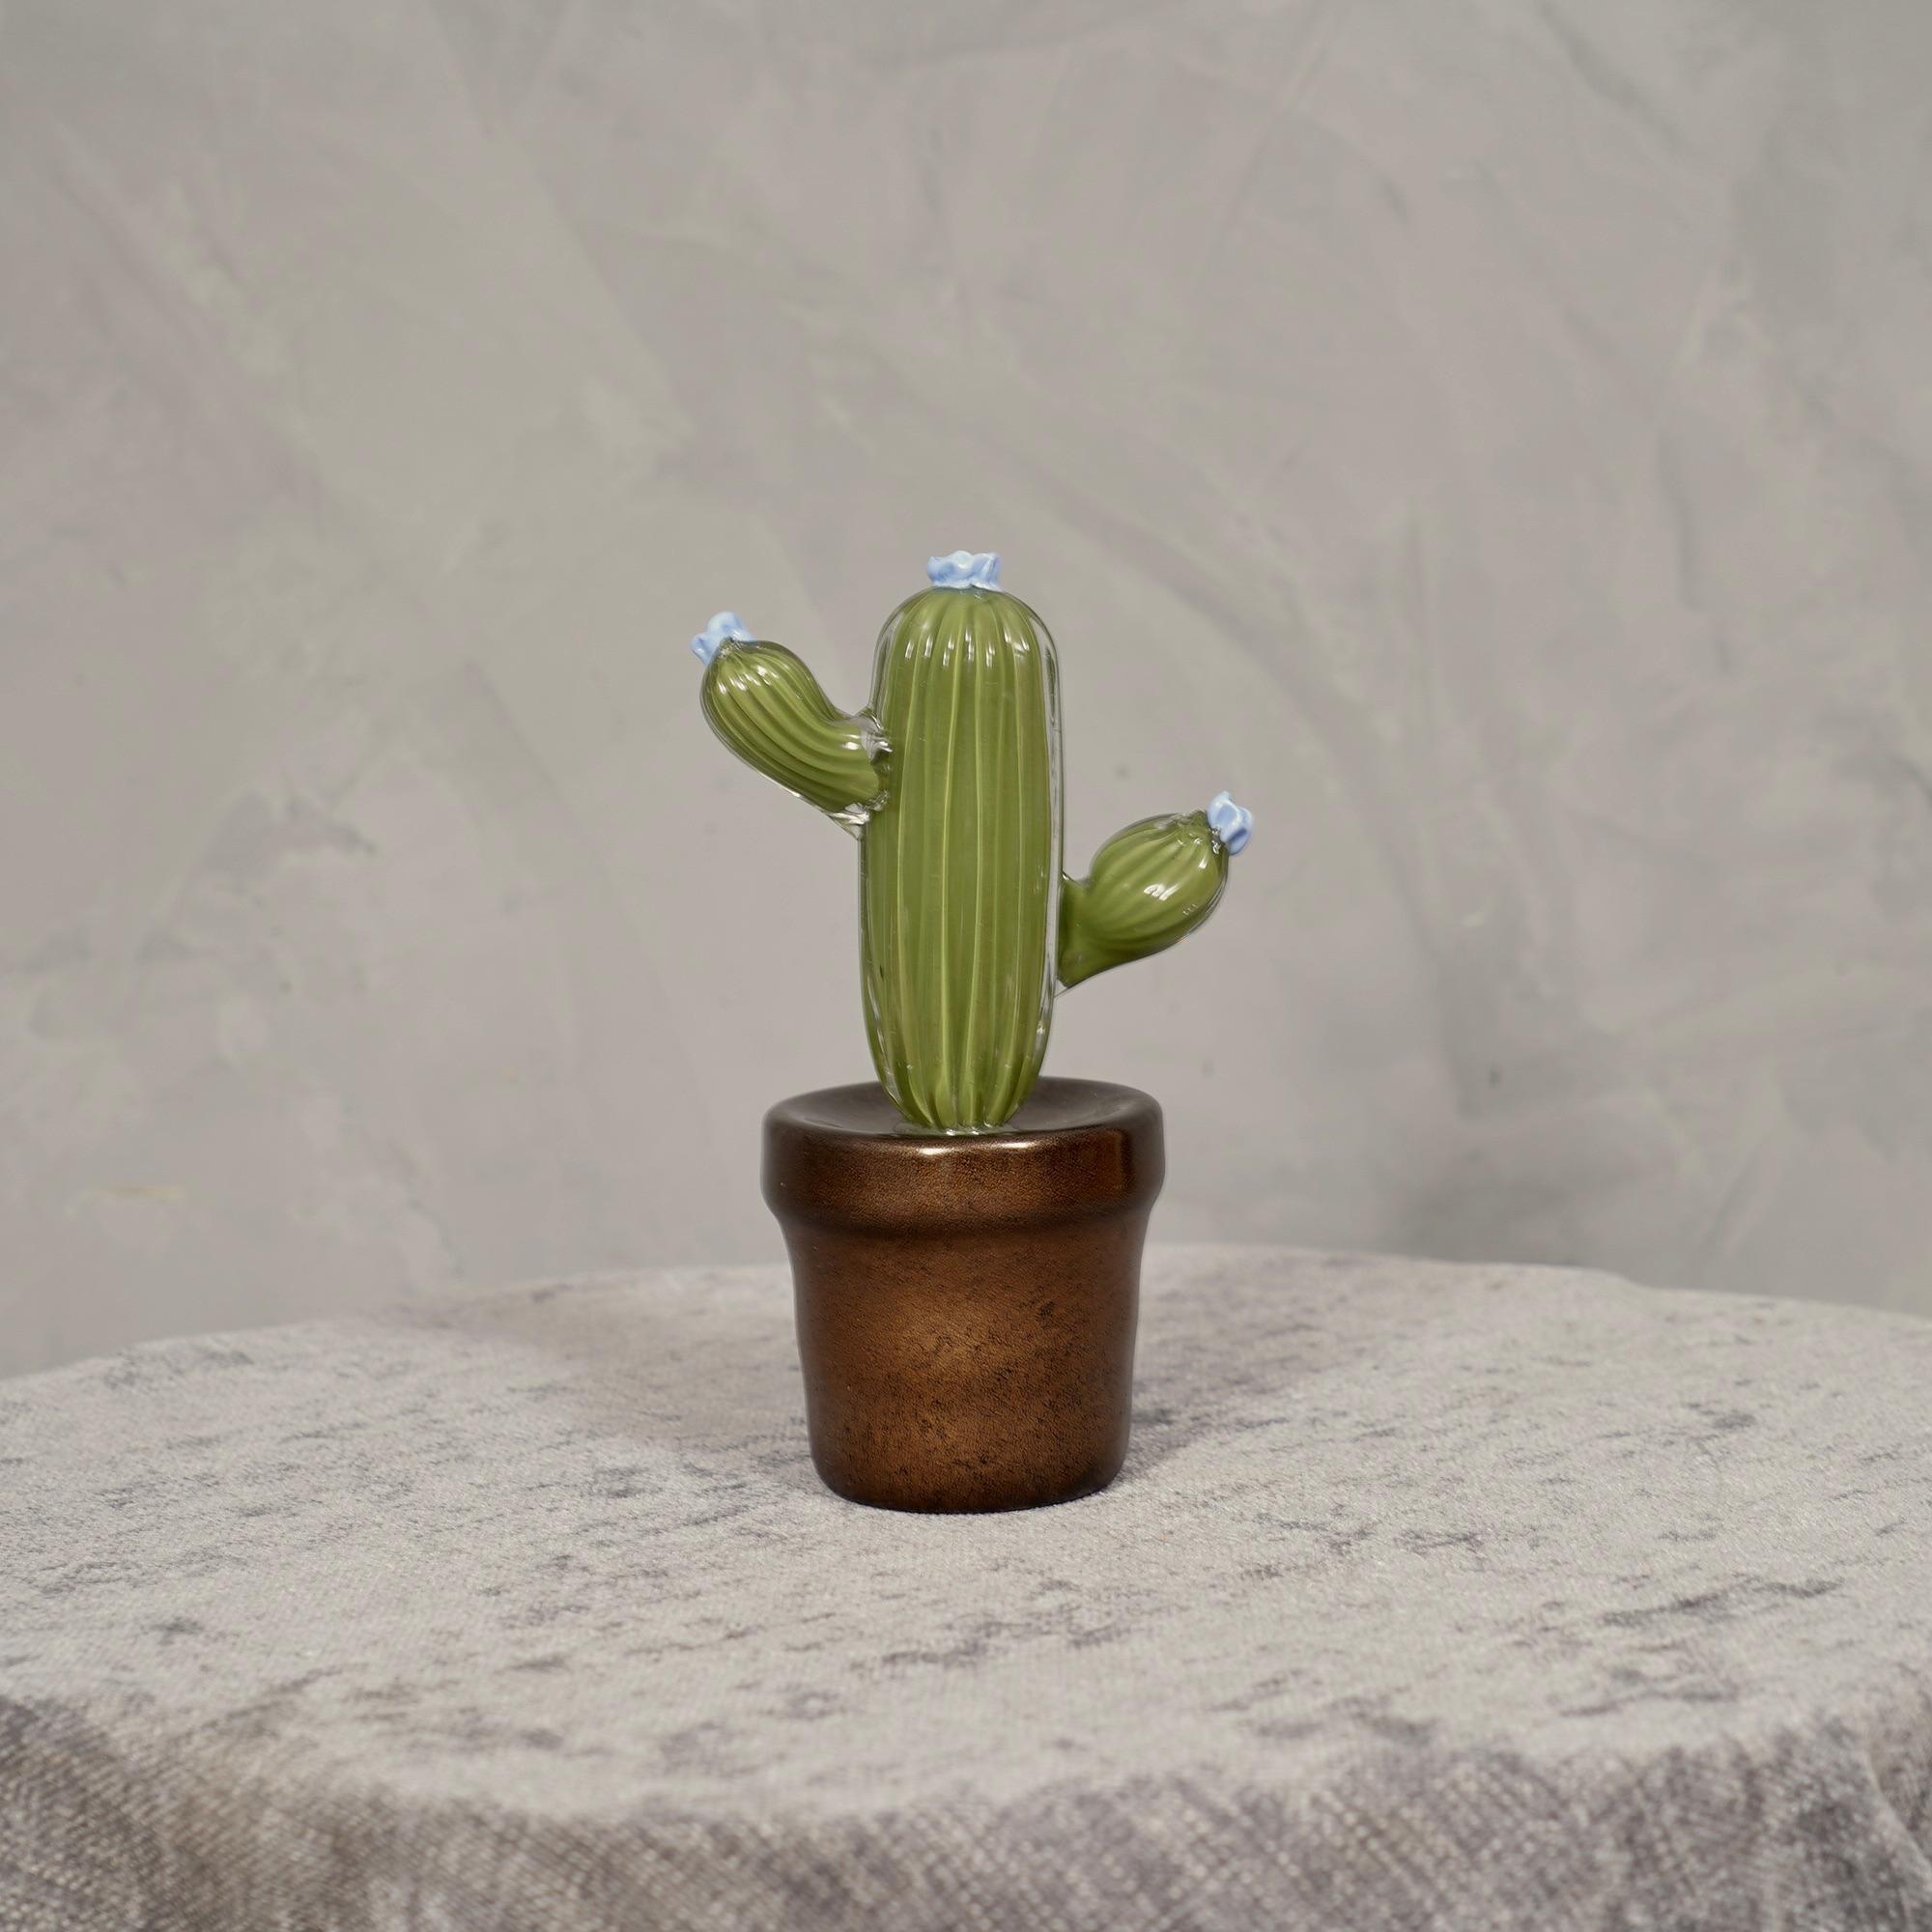 Design italien, ce cactus est une icône de mode du style italien, vert olive avec un beau vase en verre vert en dessous.

En édition limitée, fabriqués dans l'un des fours de Venise, les cactus sont en verre de Murano ont un vase en verre vert et